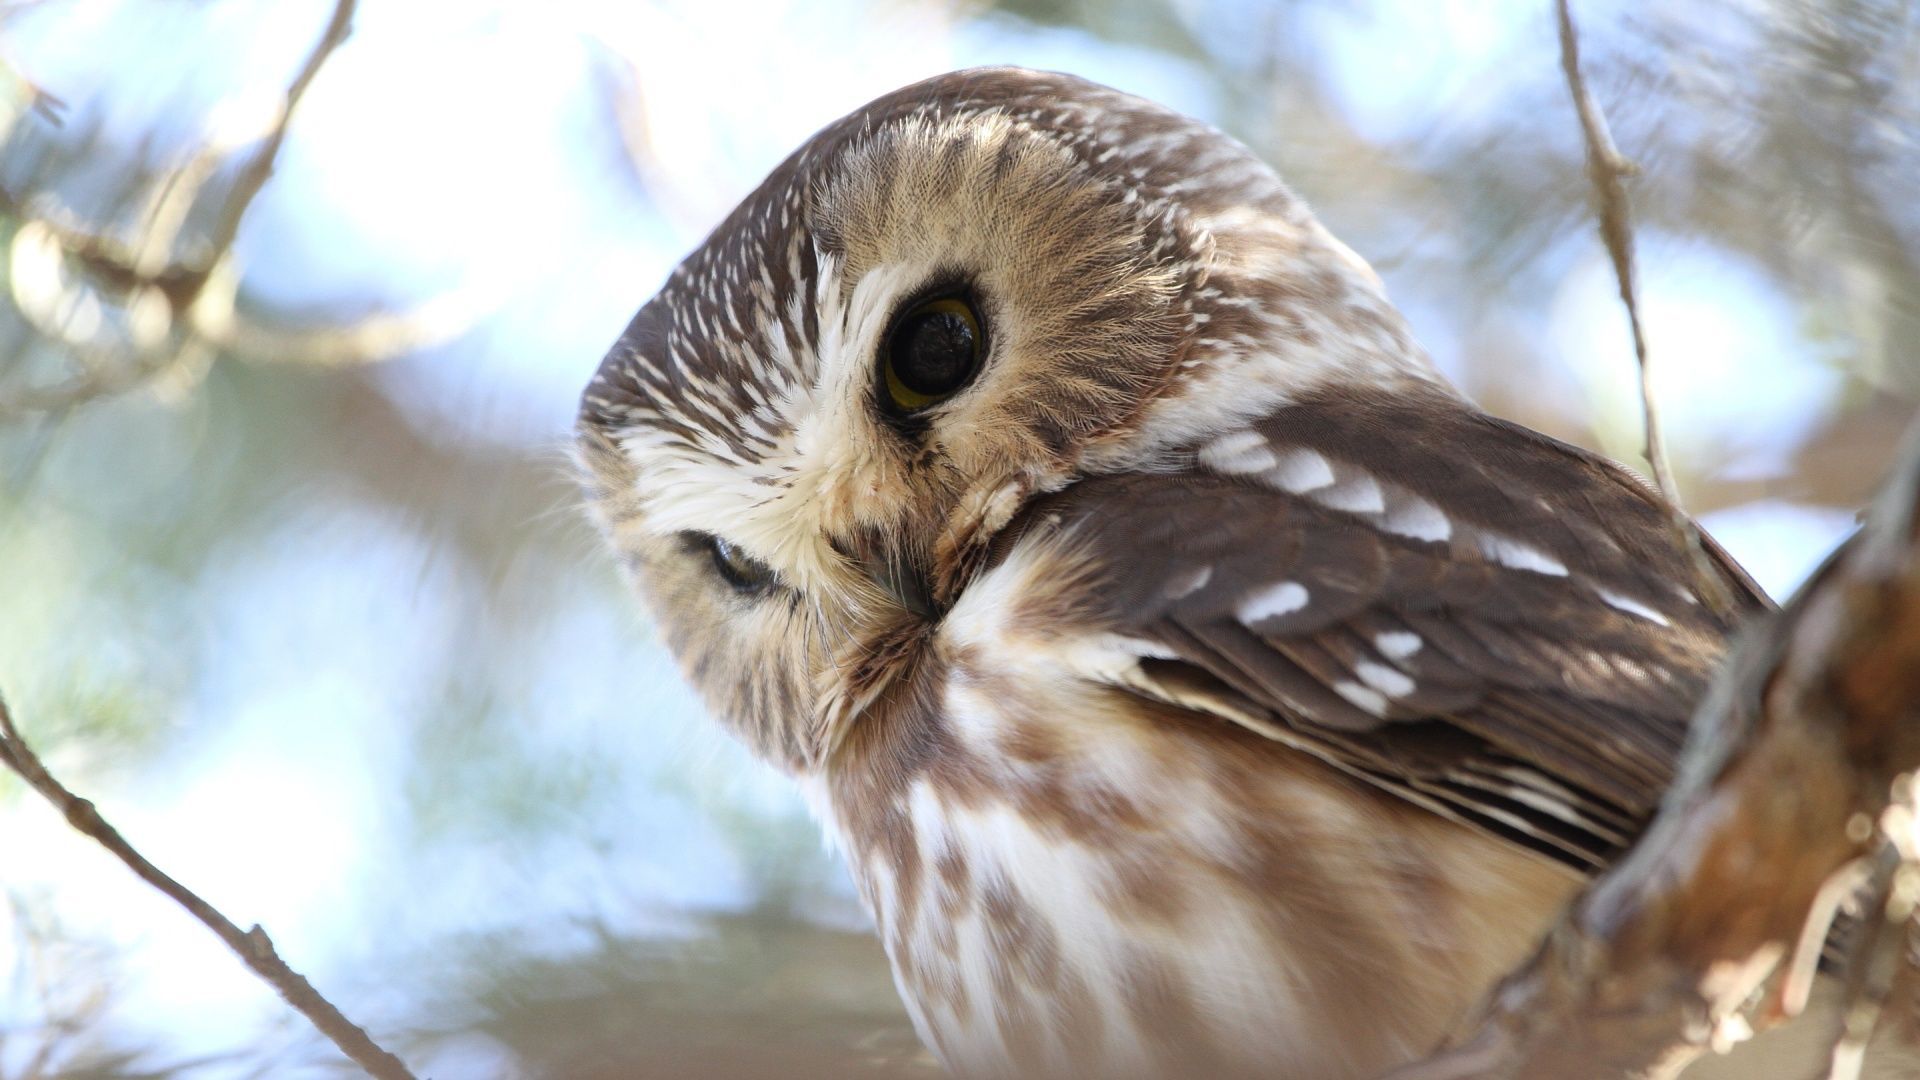 Owl picture, Cute owls wallpaper.com